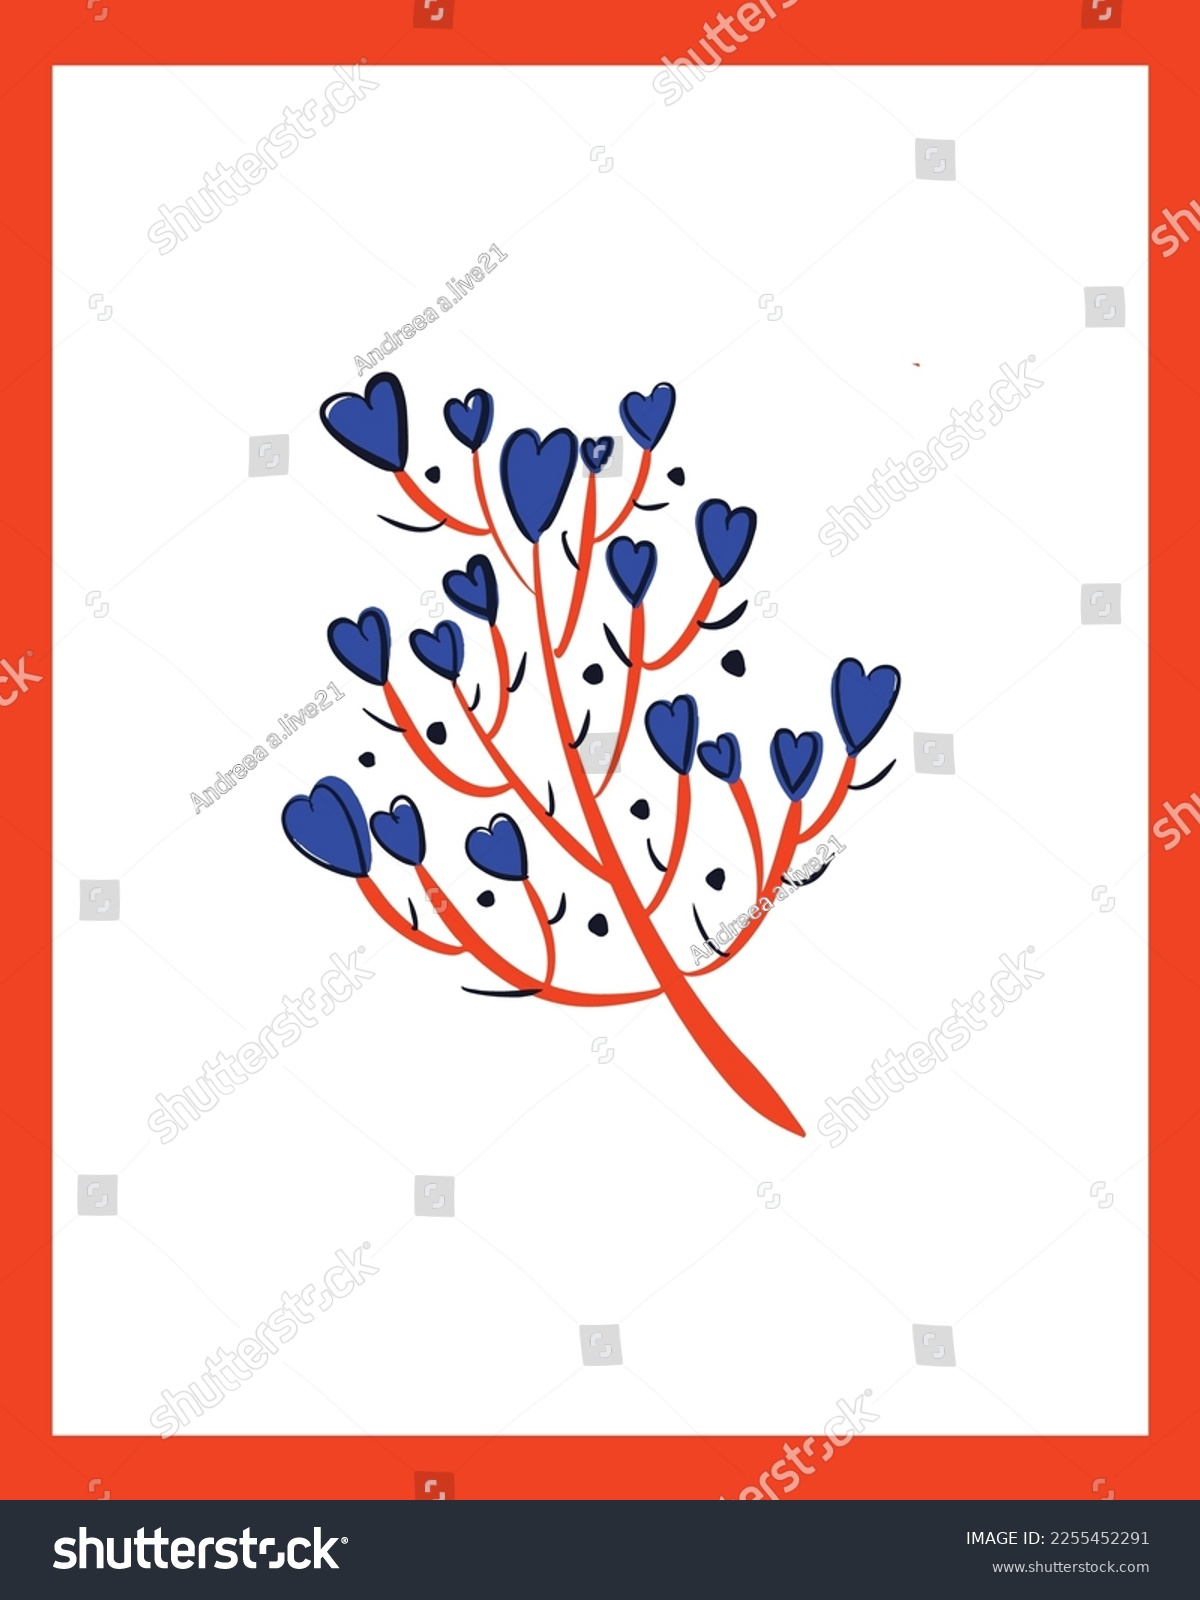 SVG of Valentine's Day Vector SVG, Doodle Hearts Illustration, Hearts Vectors, Love Illustration, Pink Hearts, Painted Hearts Illustration, Valentines Day Doodle
 svg